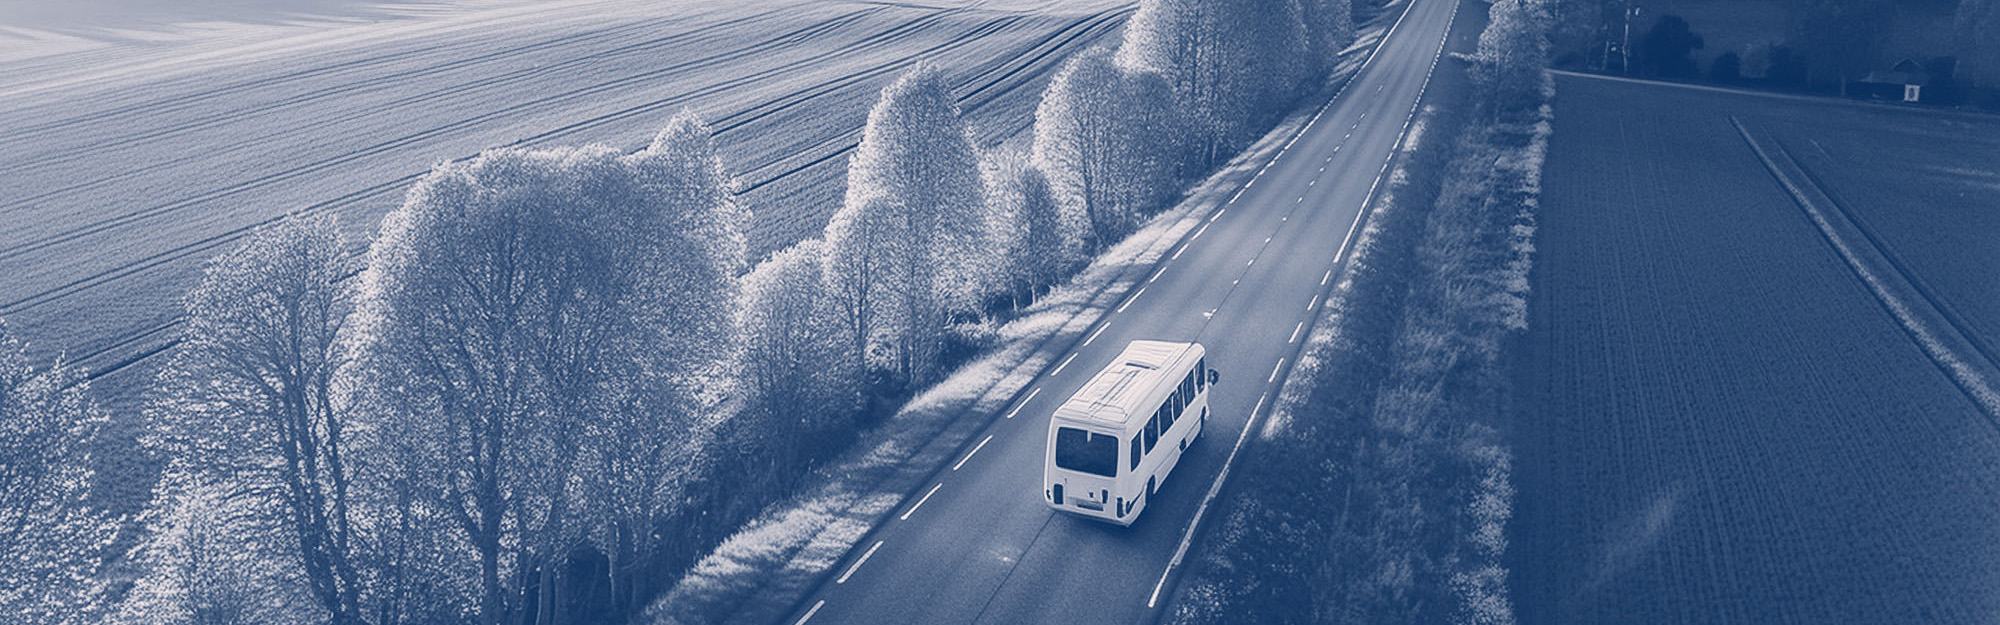 En AI-generarad bild som visar en minibuss snett uppifrån på en landsväg